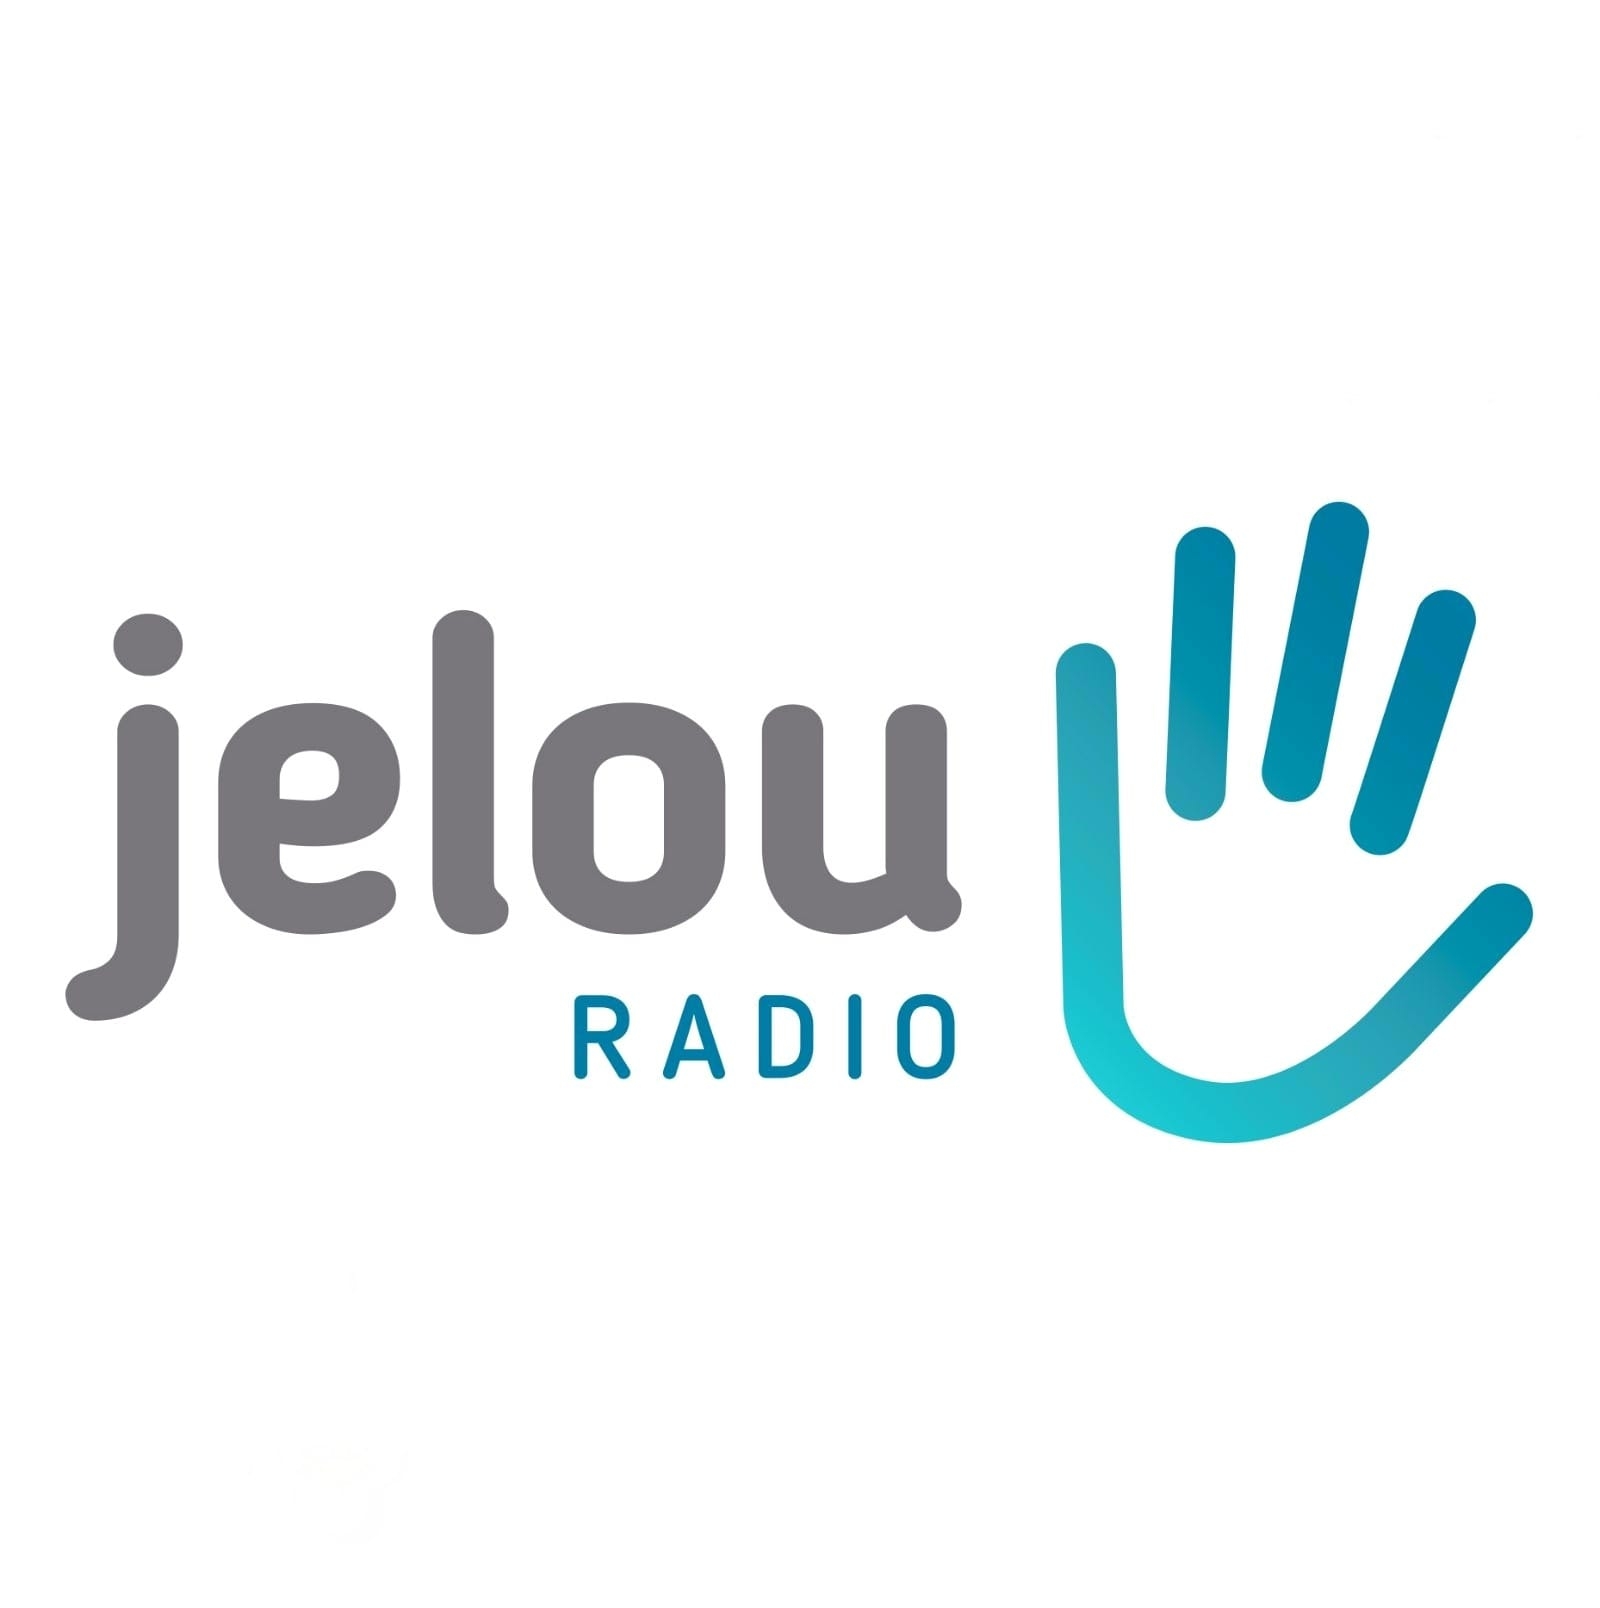 Lupo Publicidad & Comunicación (Jelou Radio)